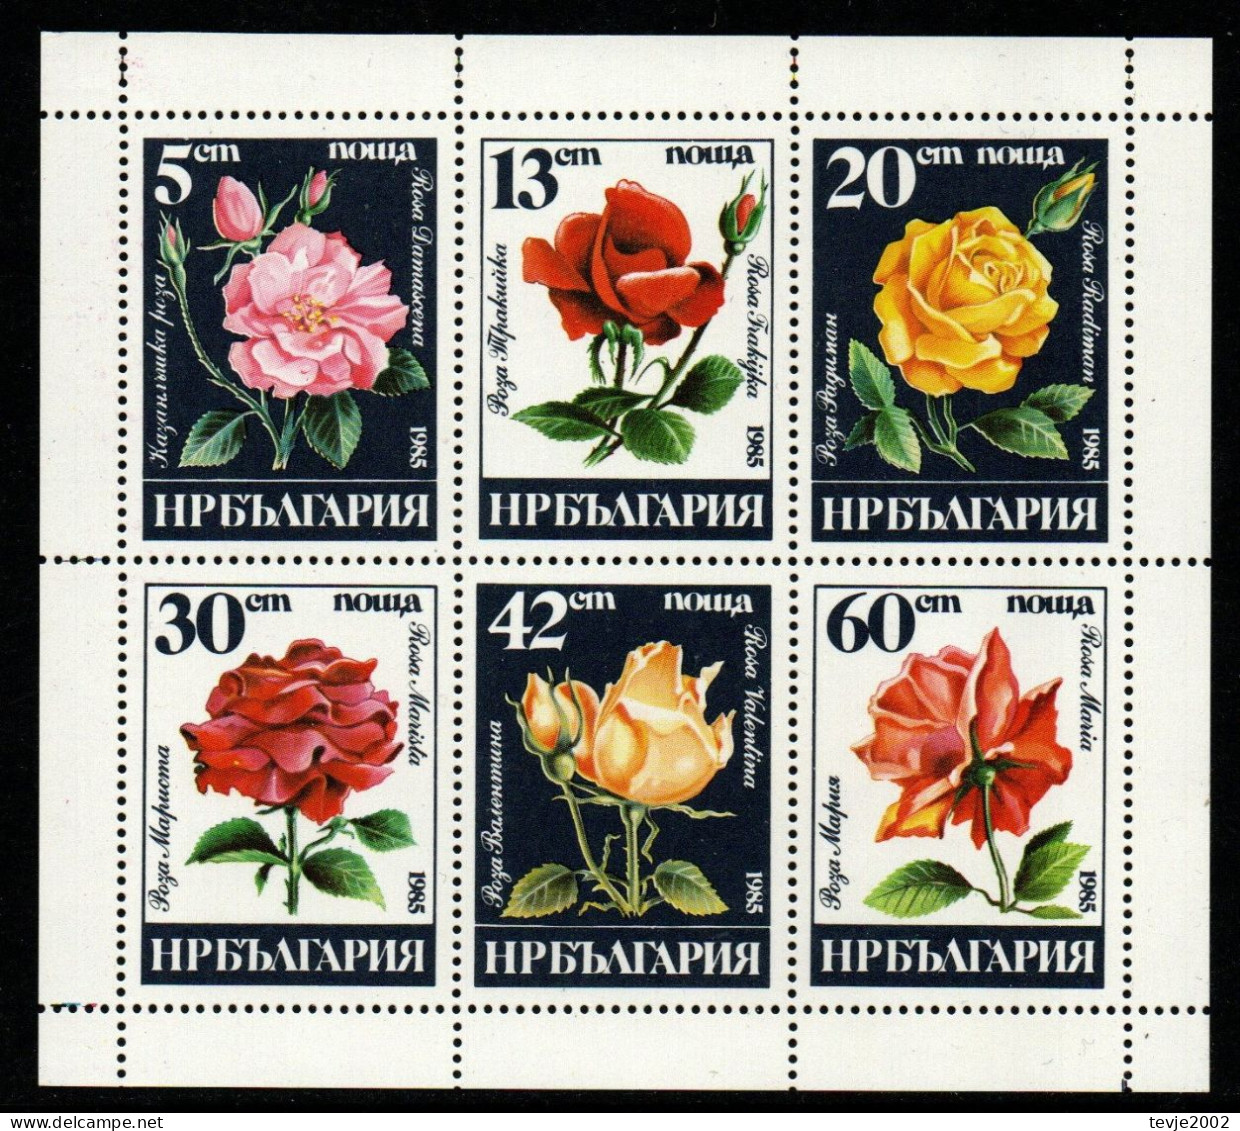 Bulgarien 1985 - Mi.Nr. 3373 - 3378 Kleinbogen - Postfrisch MNH - Blumen Flowers Rosen Roses - Rose